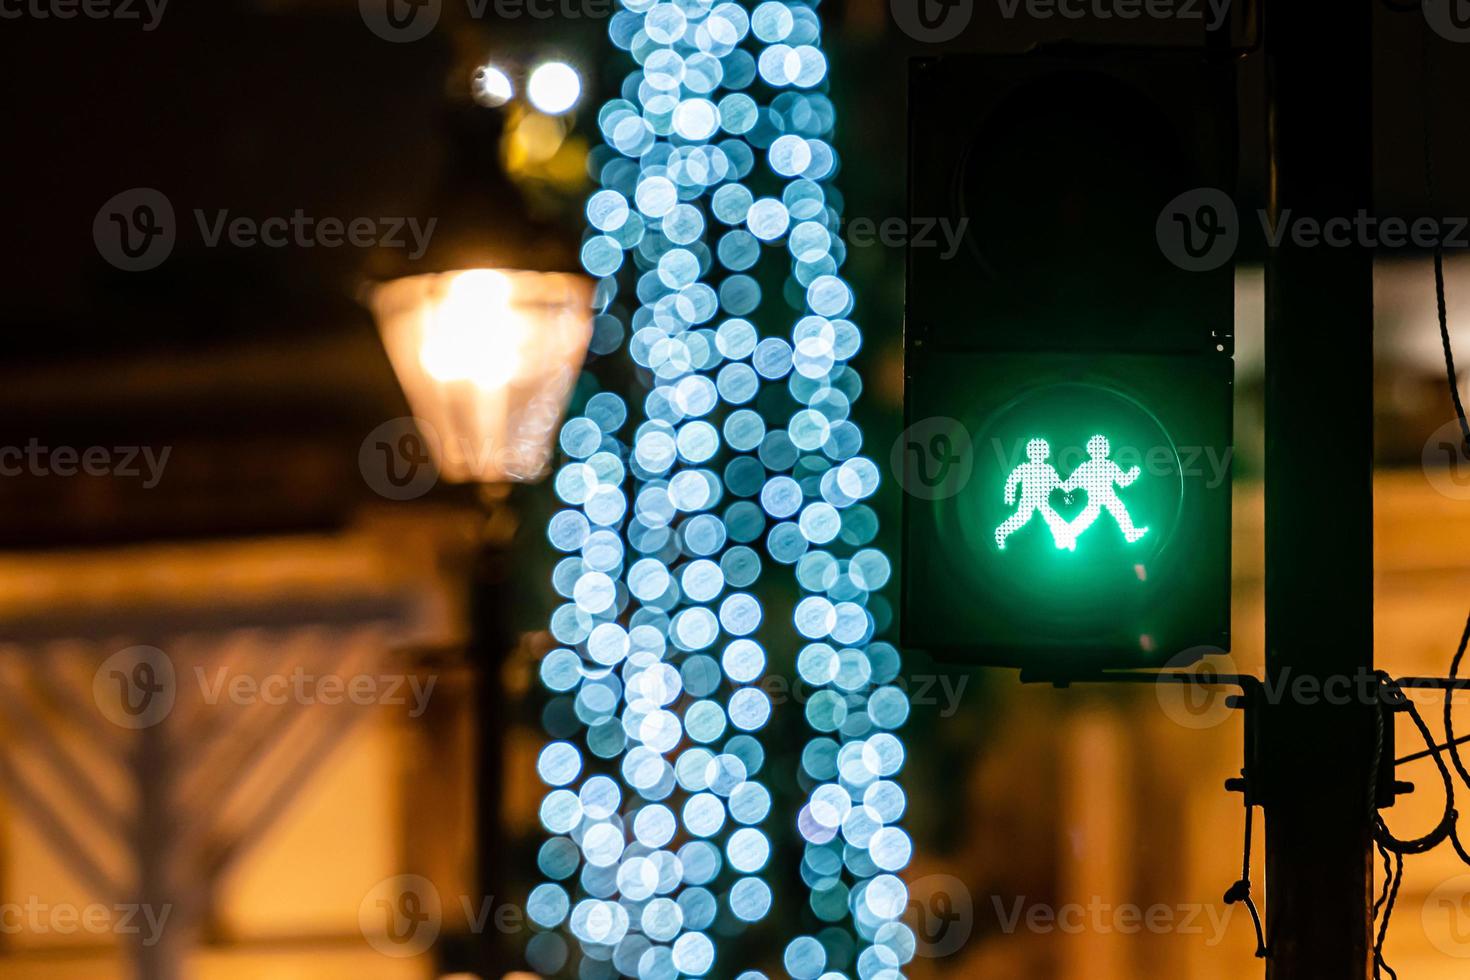 sémaphore pour piétons avec feu vert et lumières d'arbre de Noël défocalisés photo